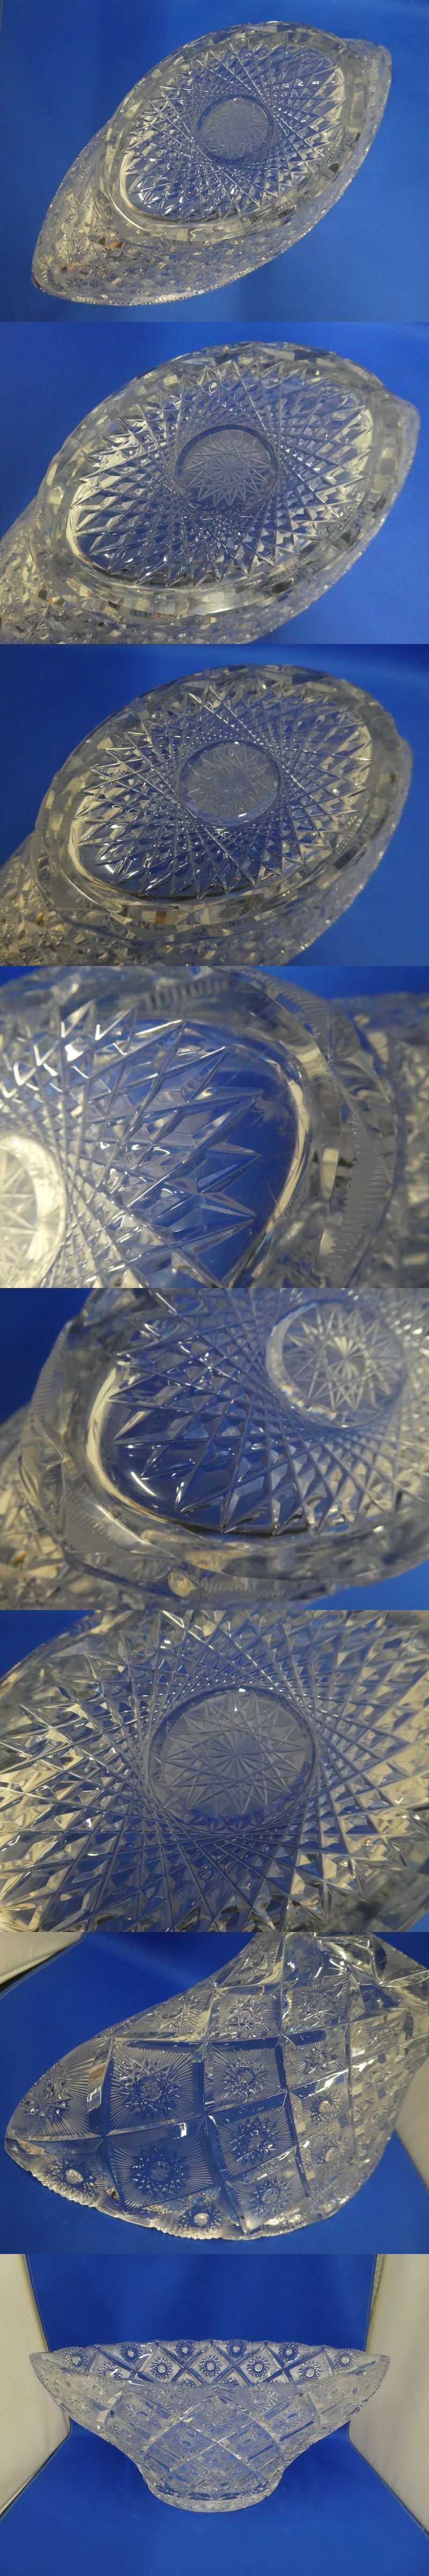 爆買い好評C01308★BOHEMIA GLASS ボヘミア クリスタル 500PK フラワーベース/高級シリーズ ガラス ハンドカット 大型 ボウル 花生け 工芸 置物 クリスタルガラス